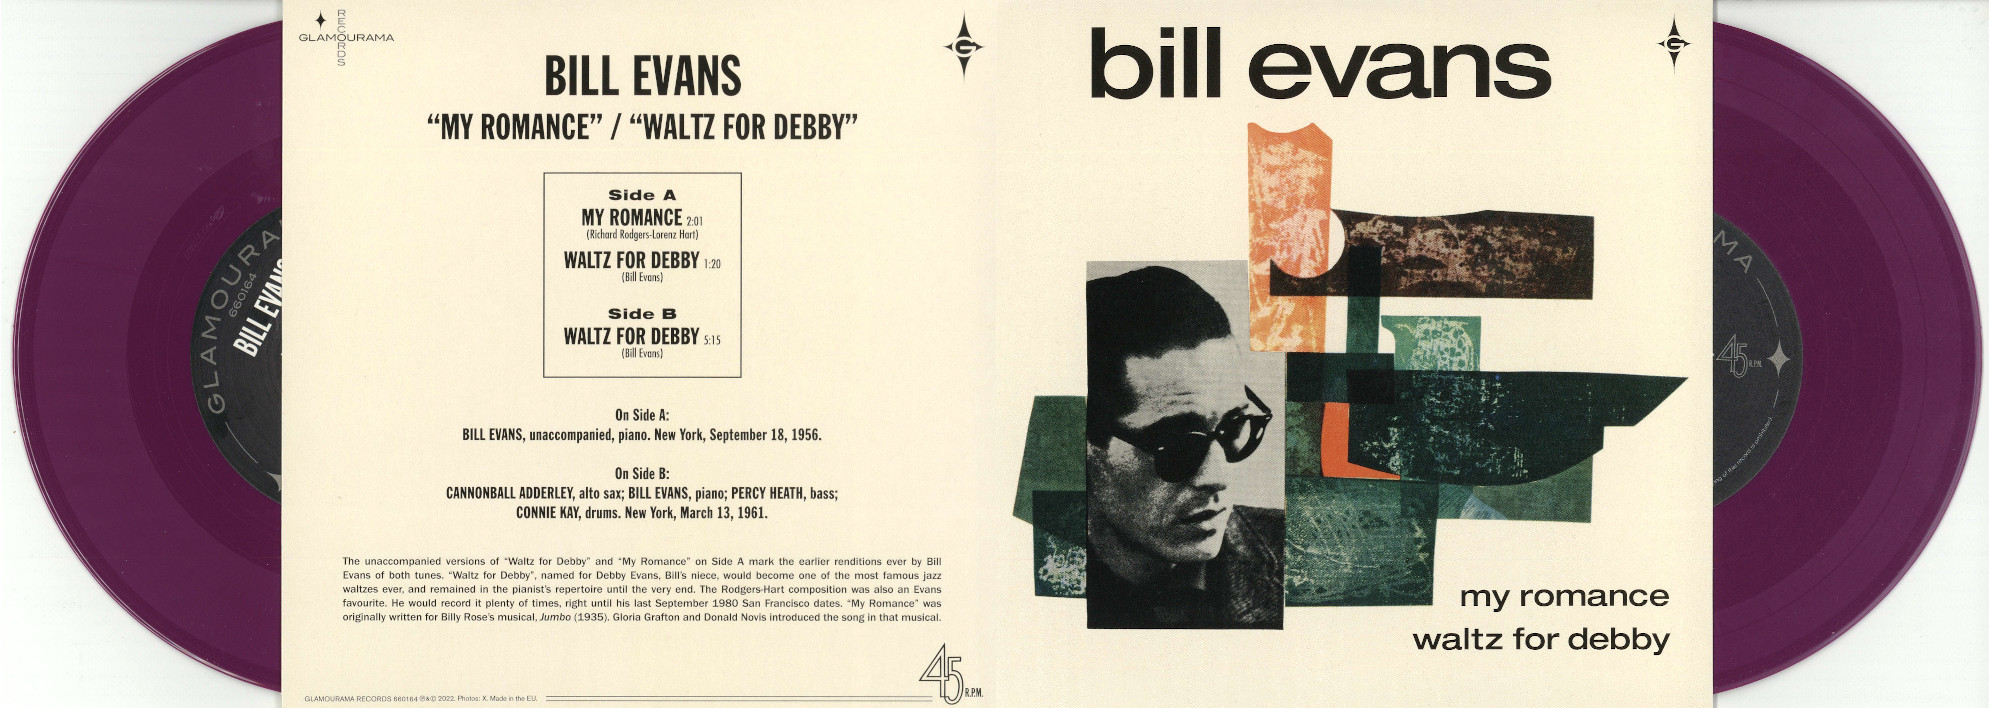 ビル・エヴァンス永遠の名盤「ワルツ・フォー・デビー」が7インチ付き 